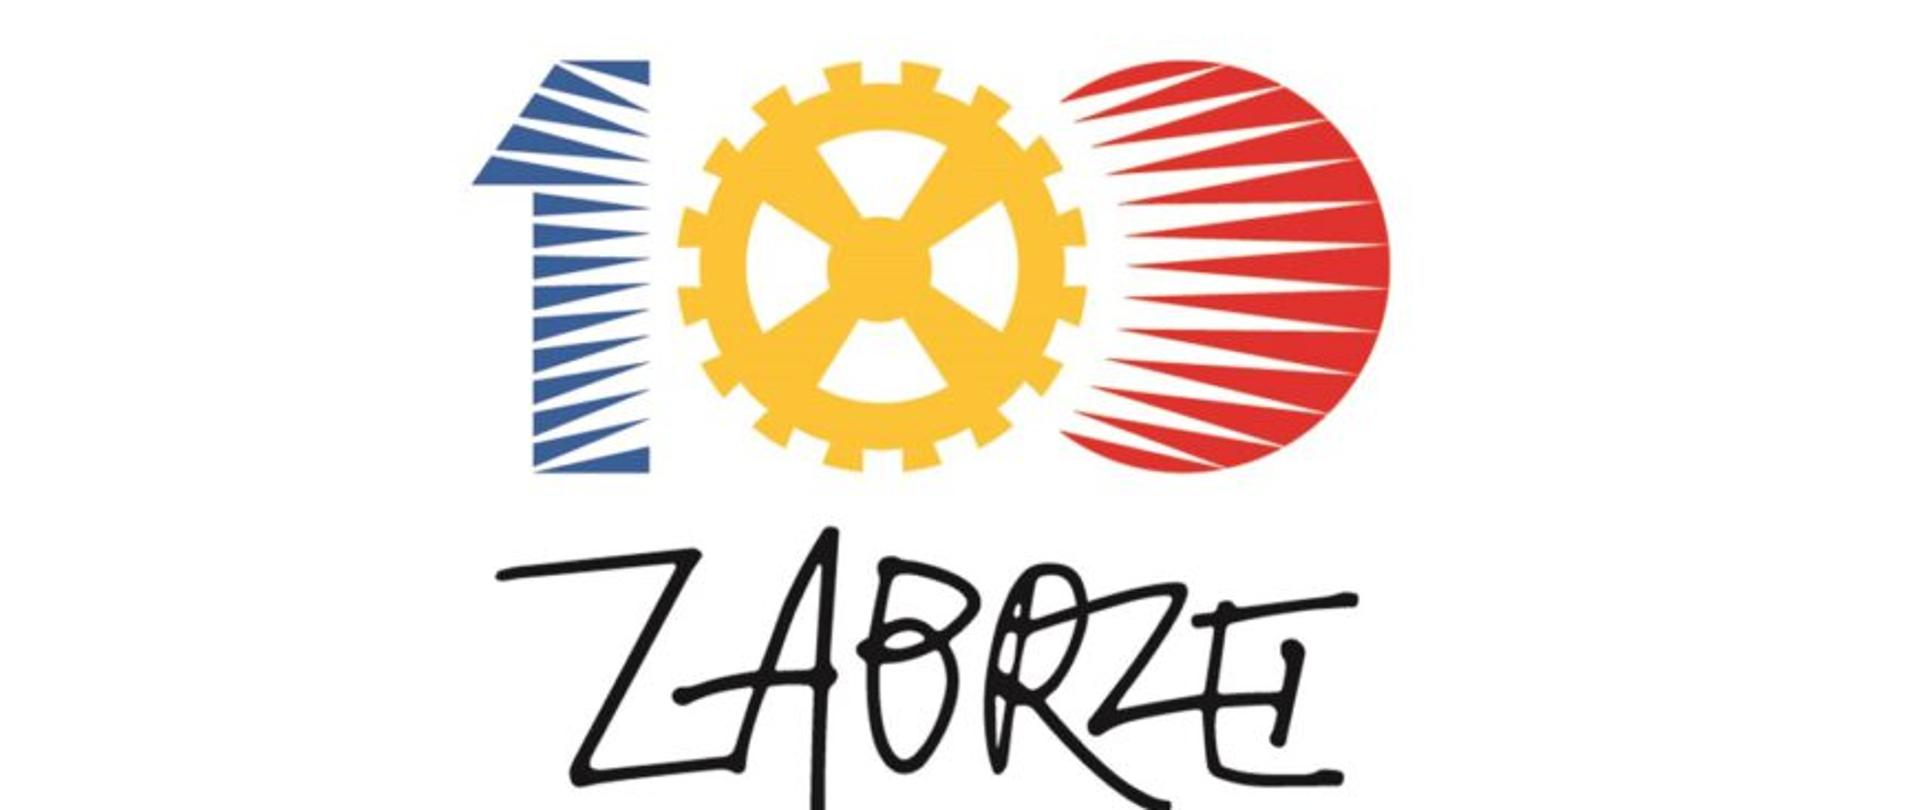 logo na stulecie miasta Zabrze, 1 w kolorze niebieskim, żółte 0 w kształcie kołatki, czerwone 0, napis Zabrze na czarno, białe tło. 